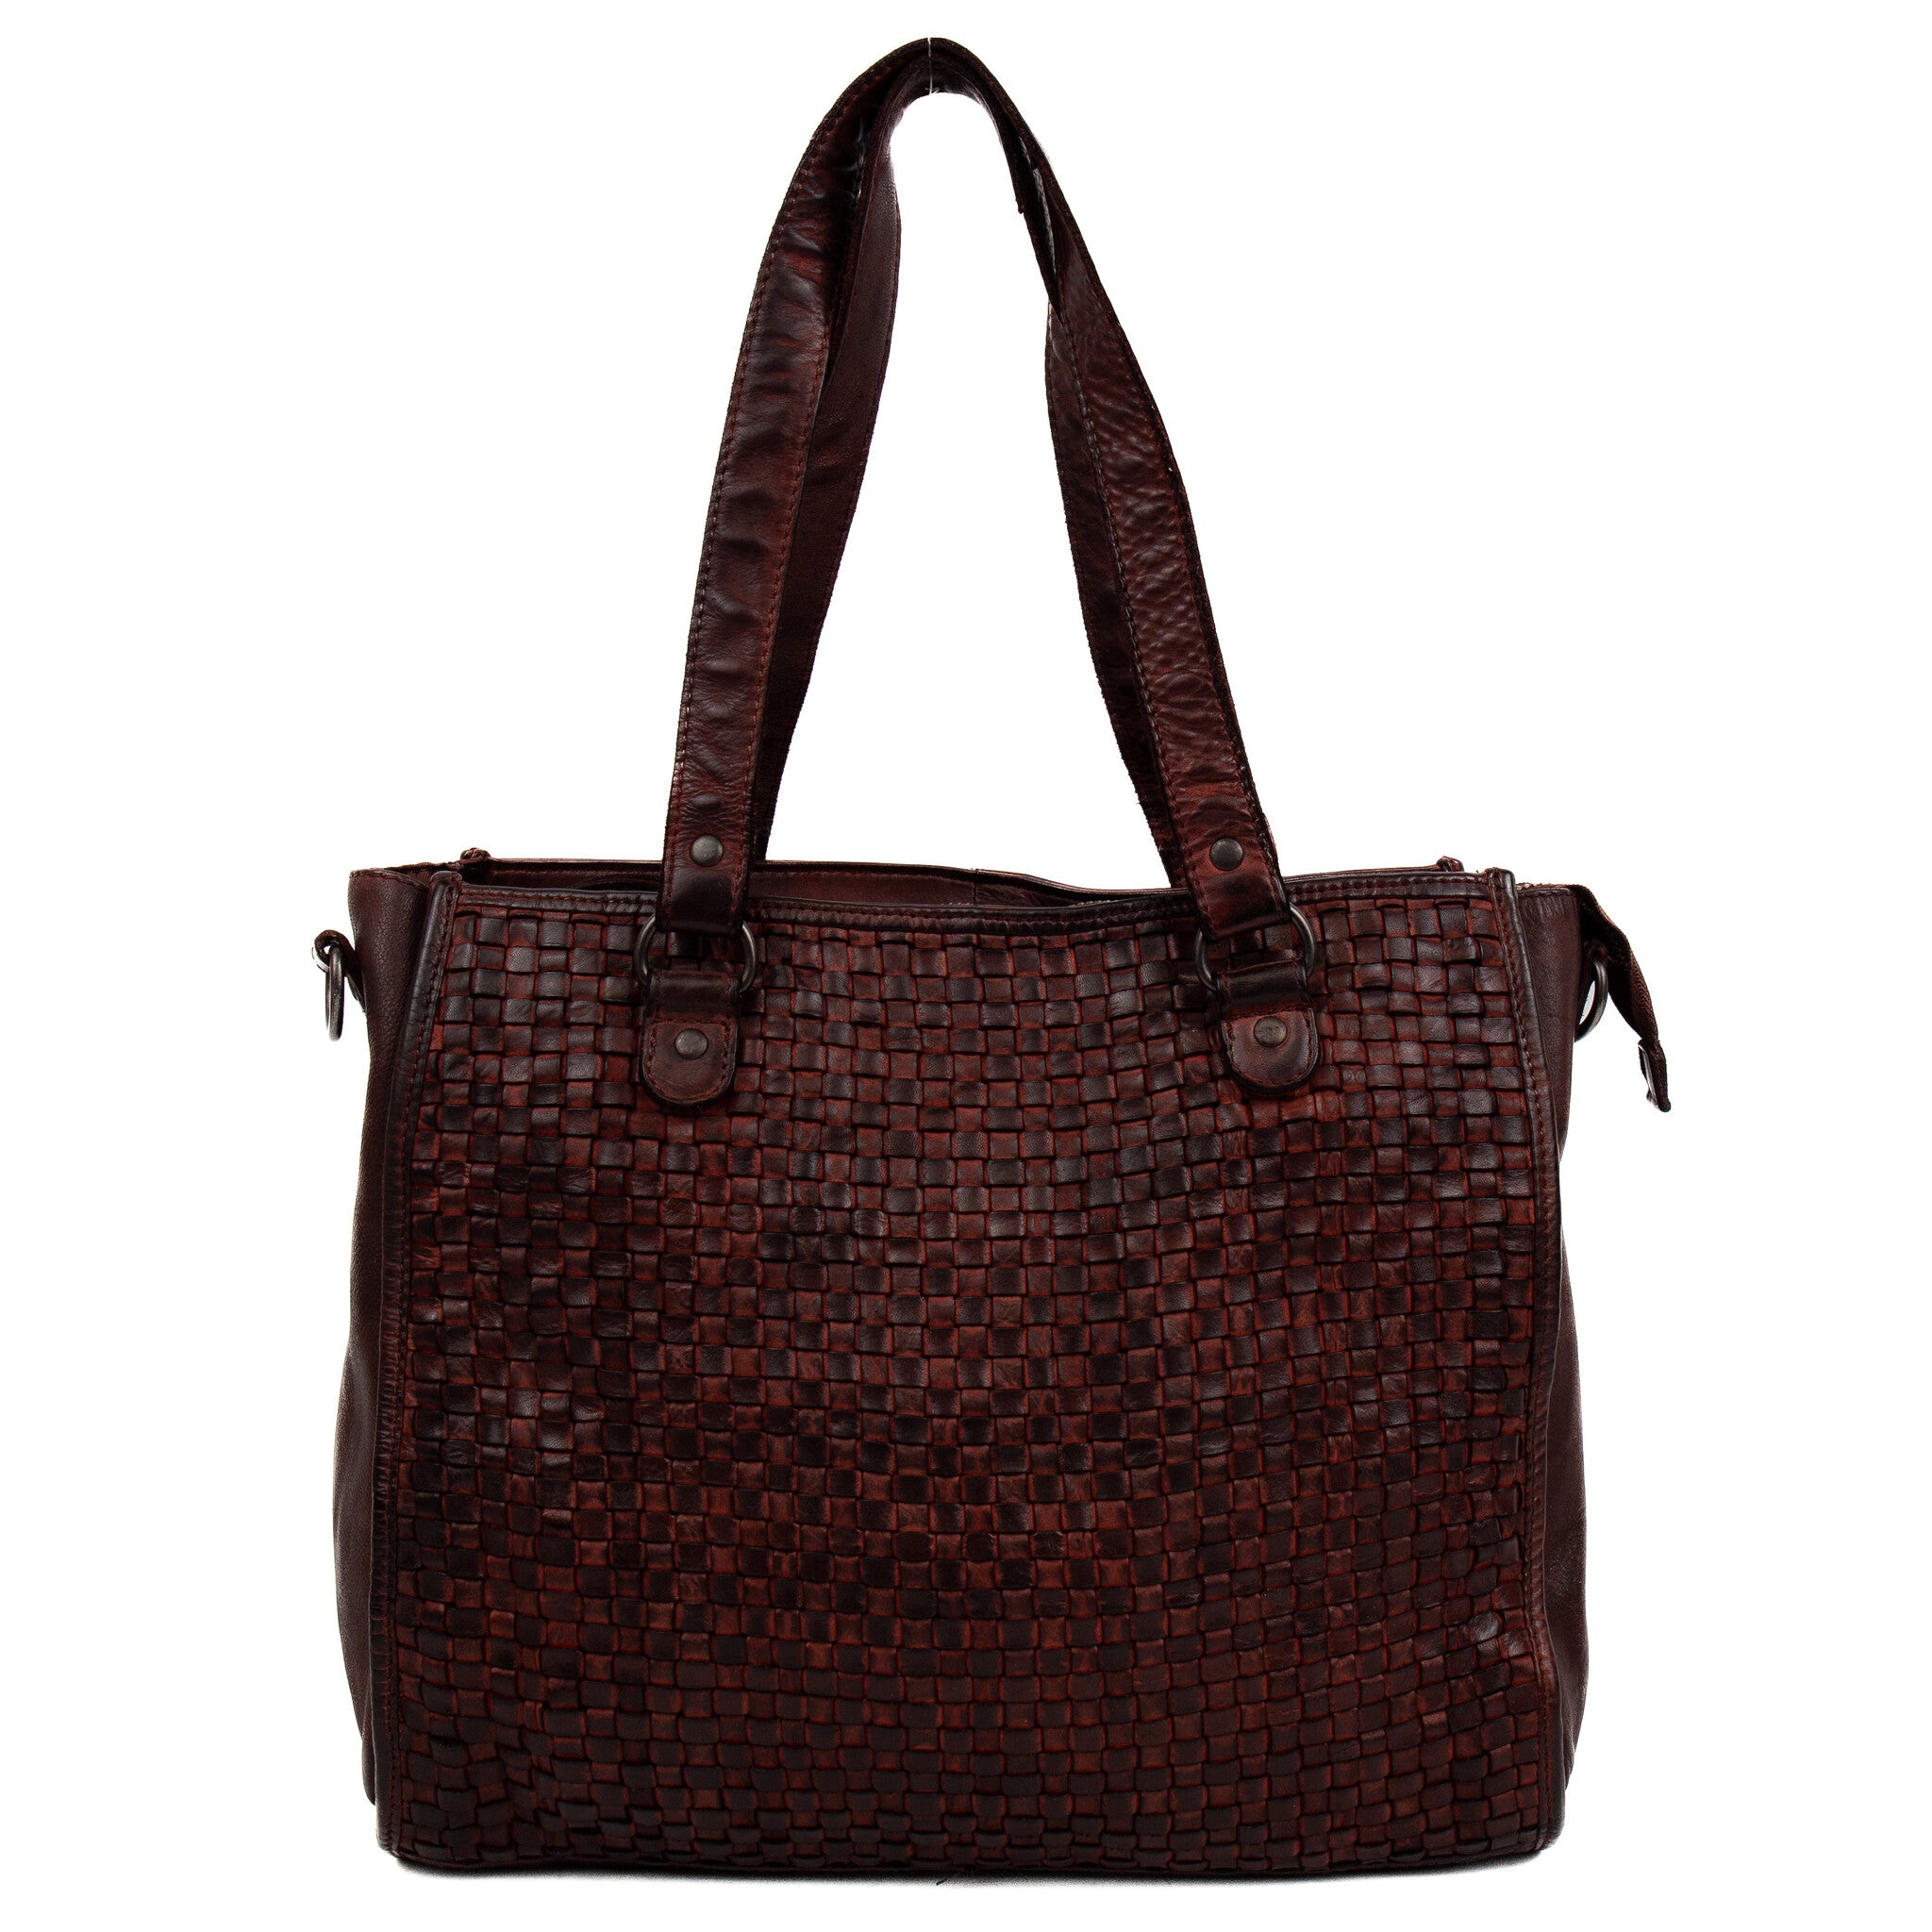 Braided hand/shoulder bag 'Lina' burgundy - CL 43371